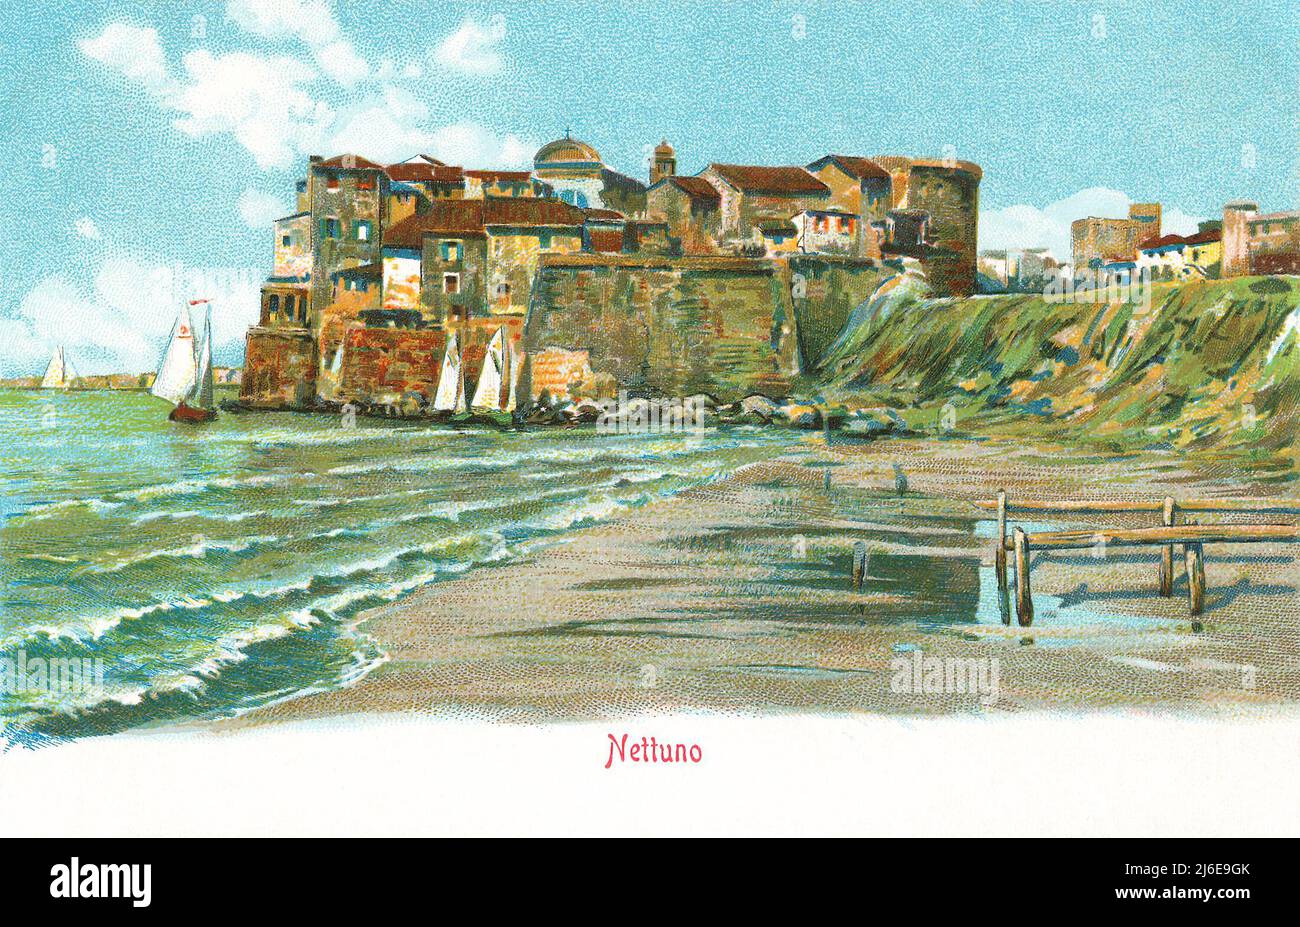 Cartolina d'epoca della cittadina balneare italiana di Nettuno, nei pressi di Roma. Foto Stock